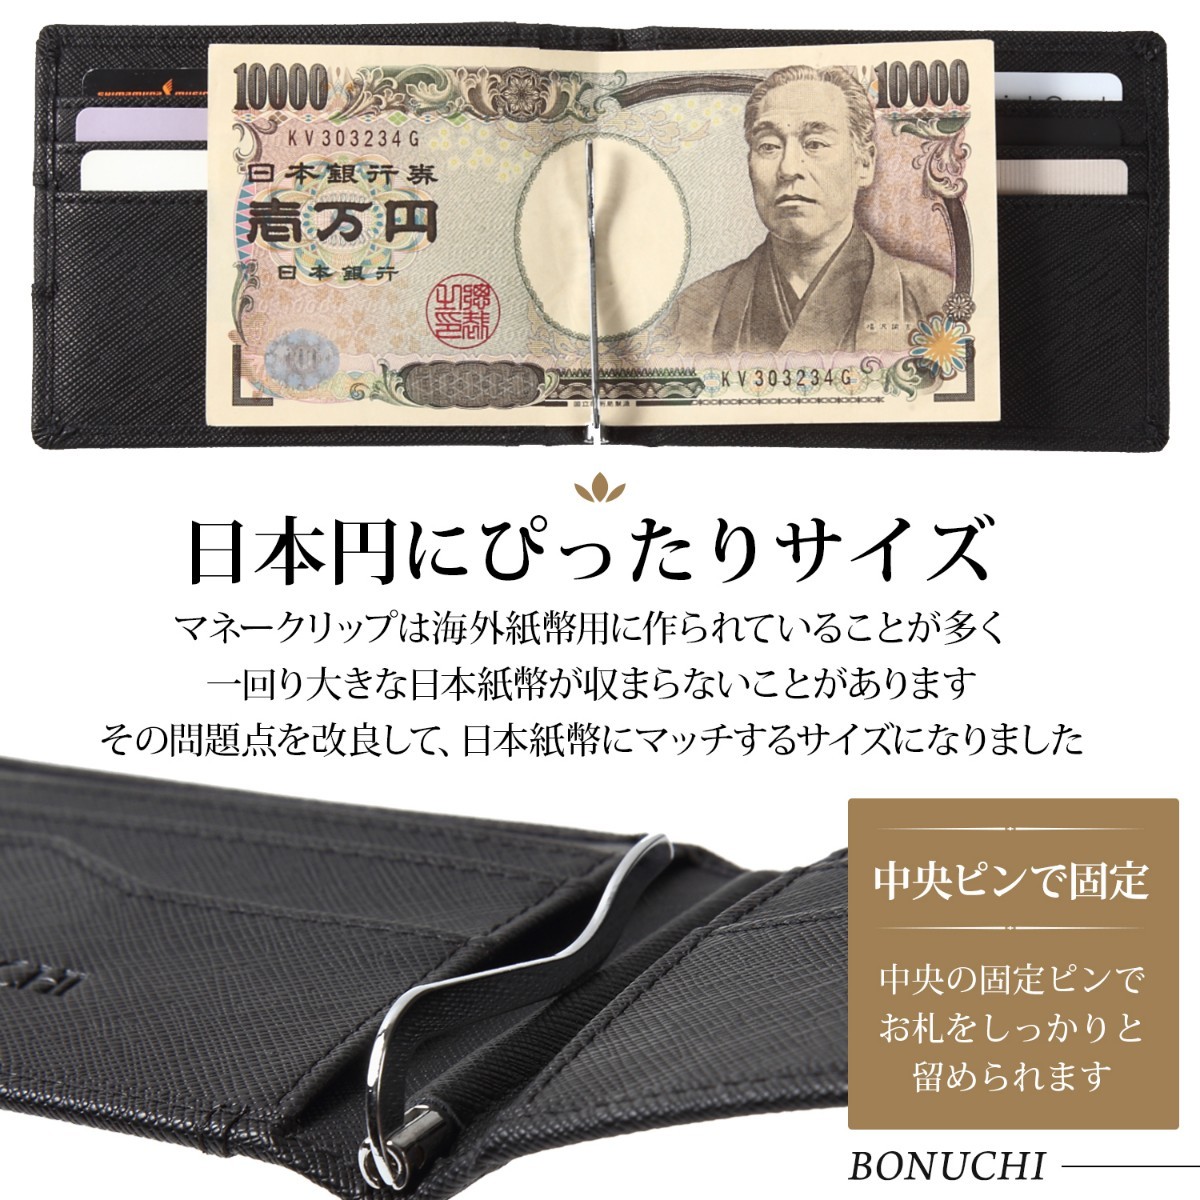 メンズ 財布 マネークリップ ICカードポケット 高級感 本革 化粧箱付